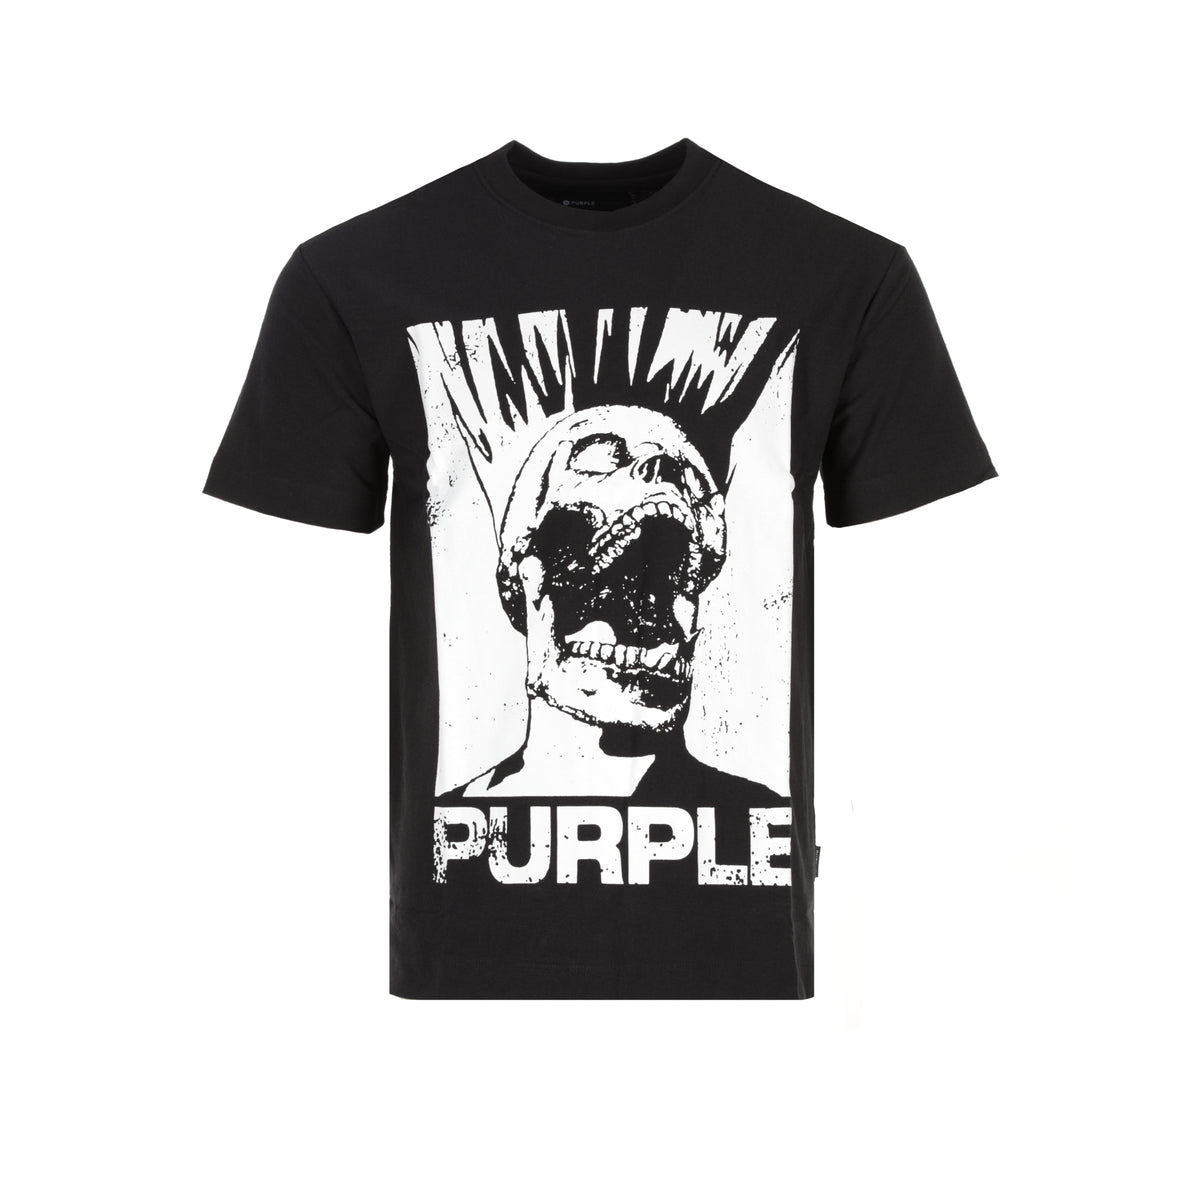 Purple Brand Textured Jersey SS Tee Headache Black Beauty Men's T-Shirt